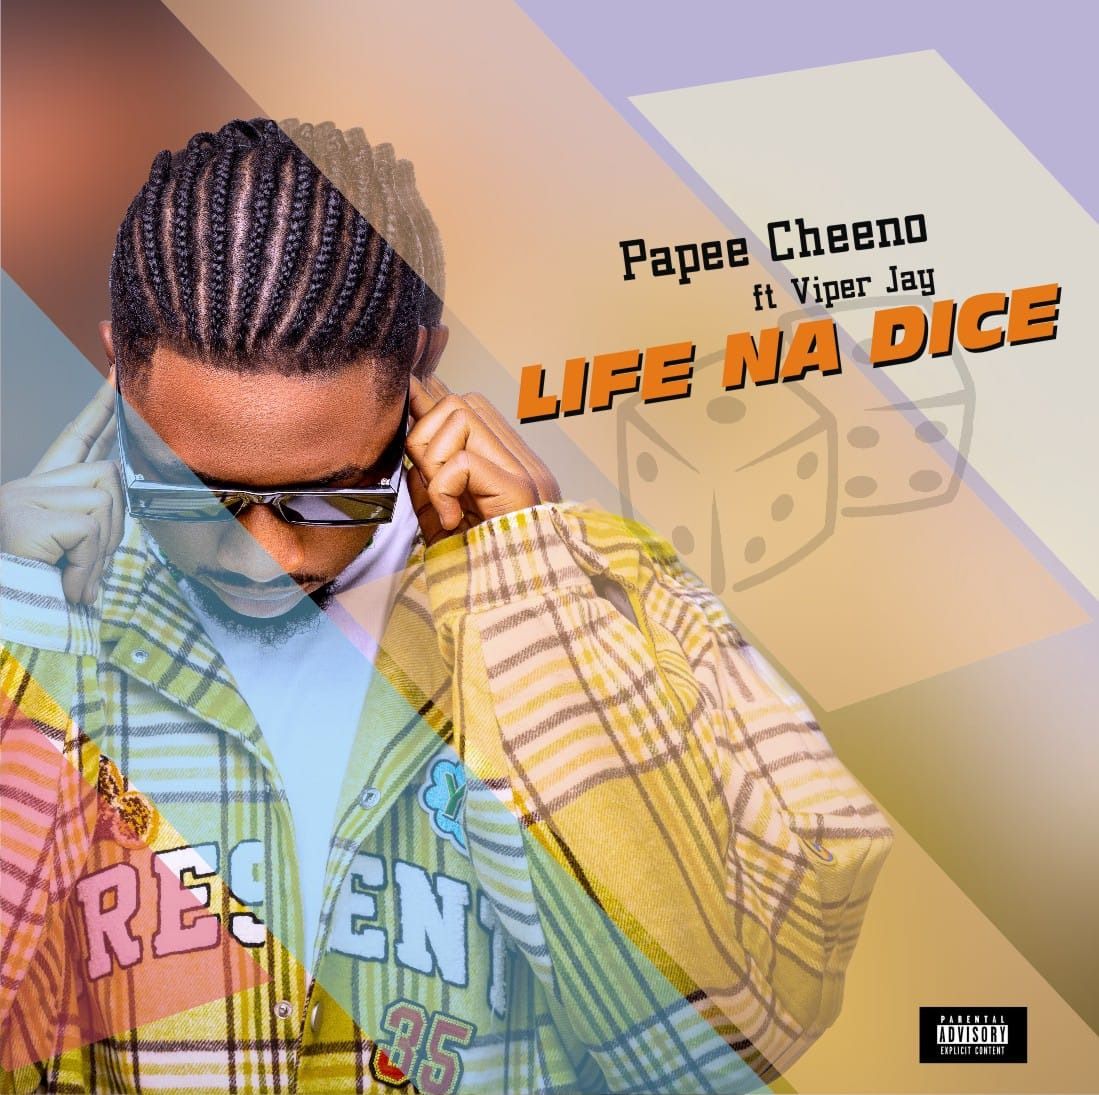 Papee Cheeno - Life Na Dice Ft. Viper jay